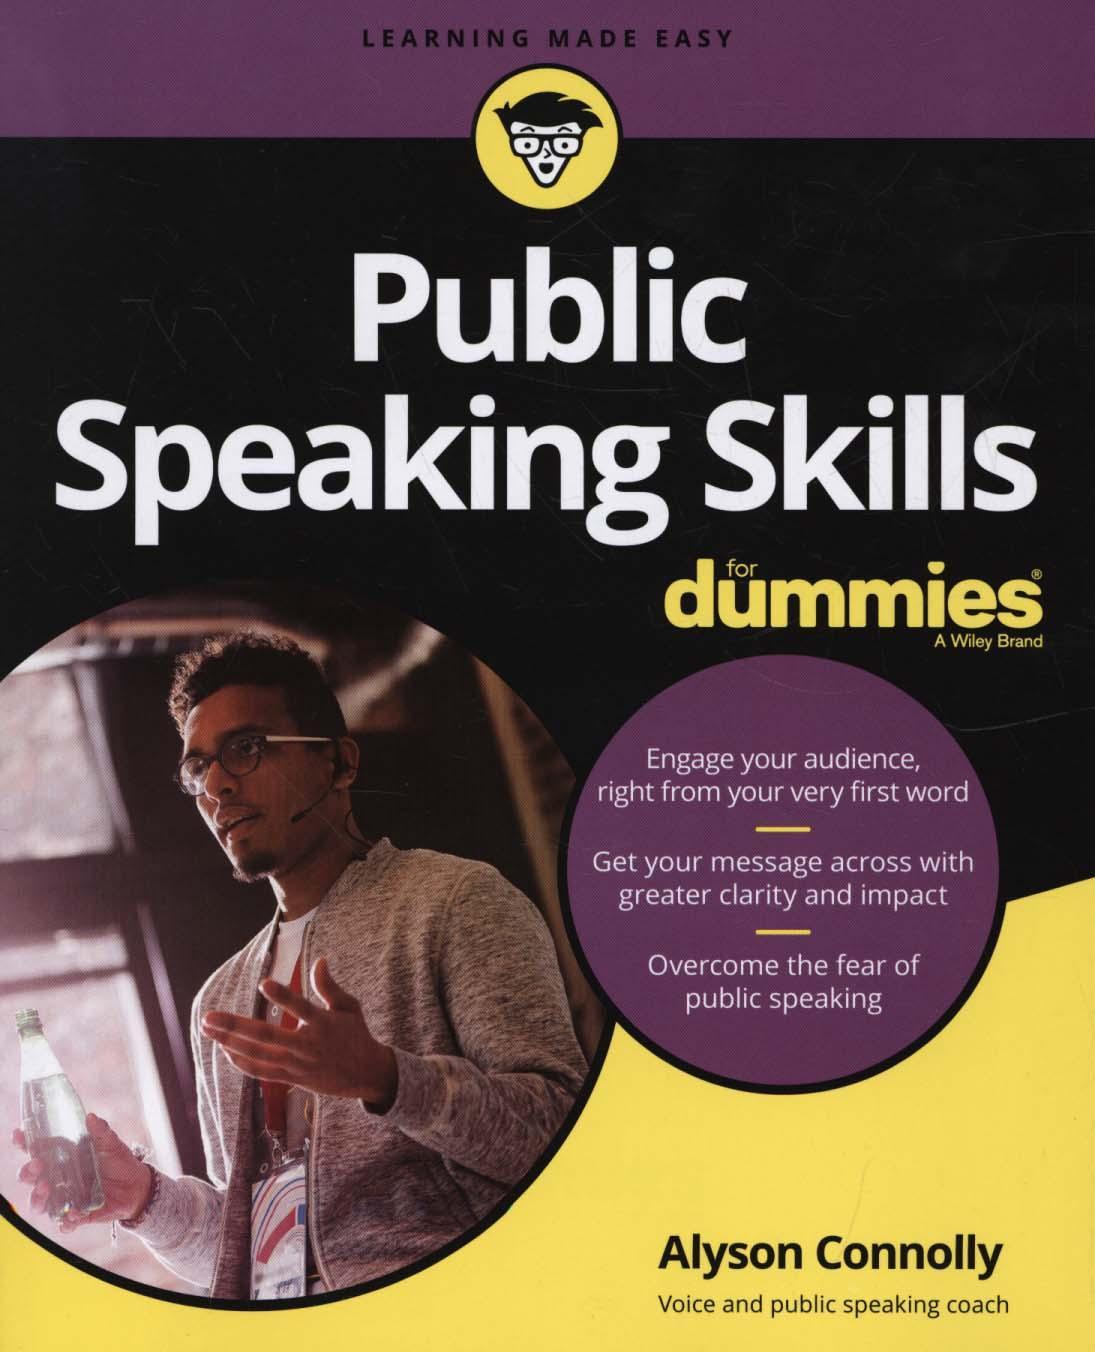 Public Speaking Skills For Dummies